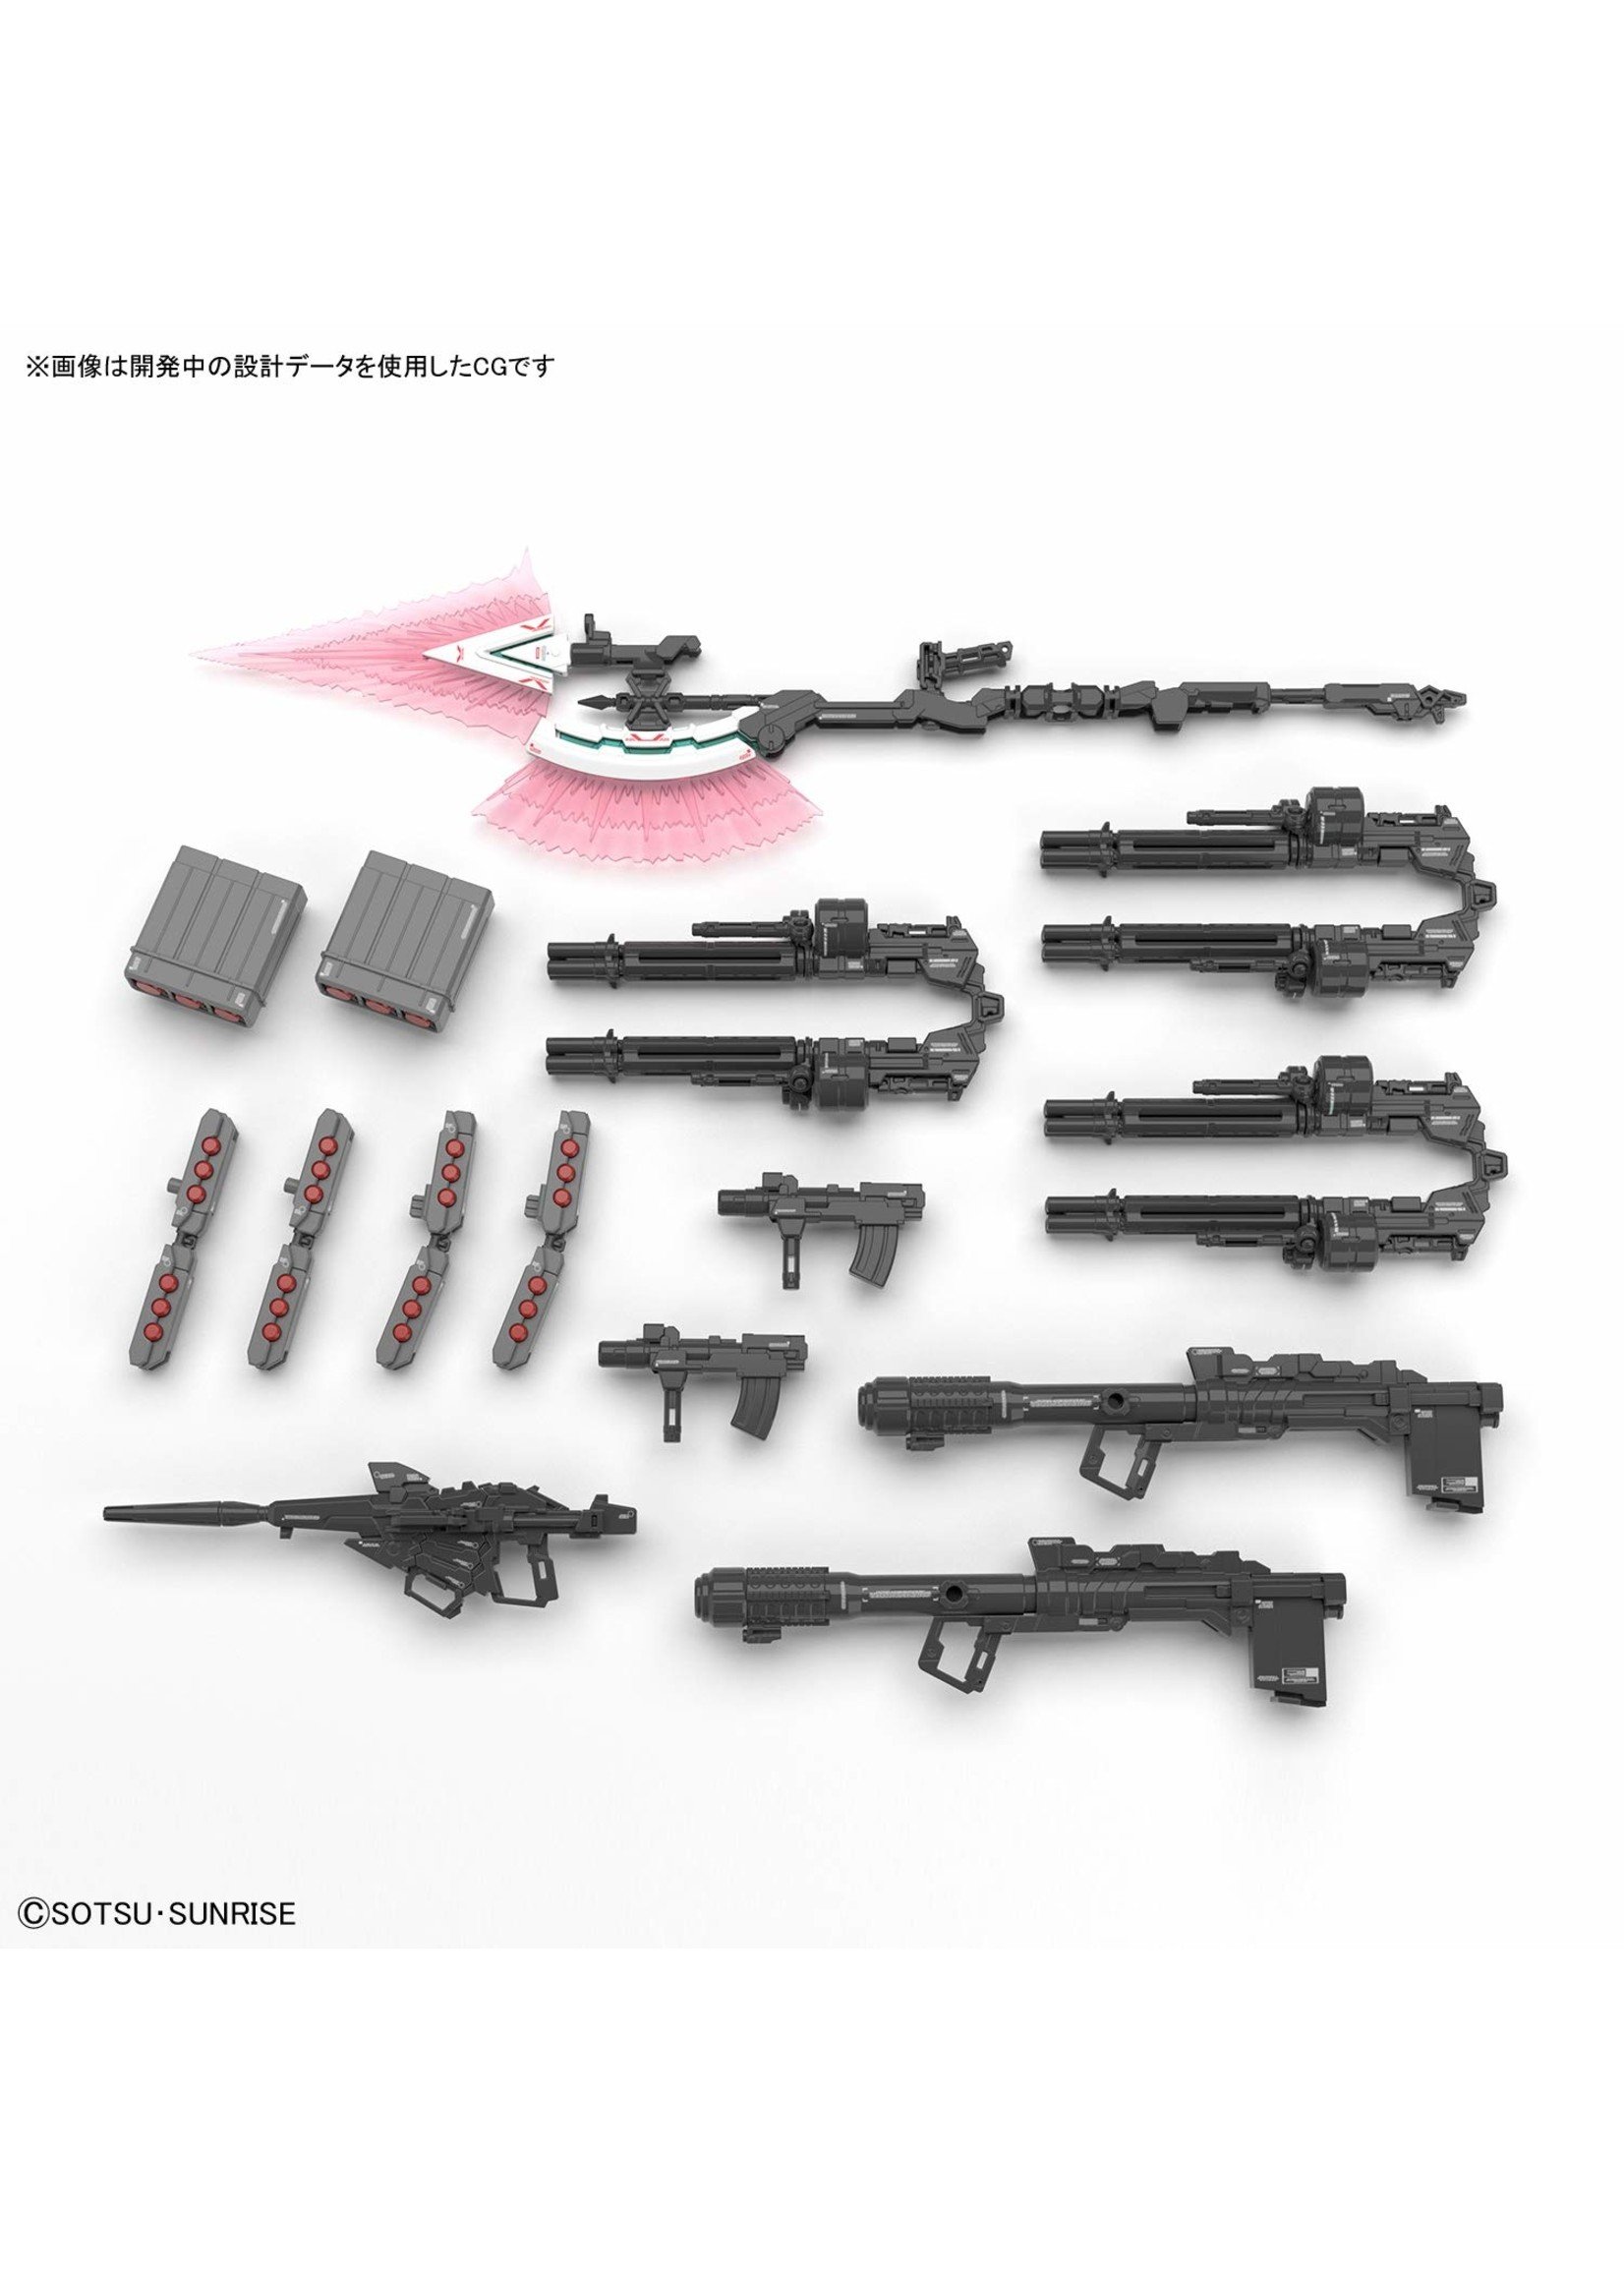 Bandai #30 Full Armor Gundam Unicorn RG